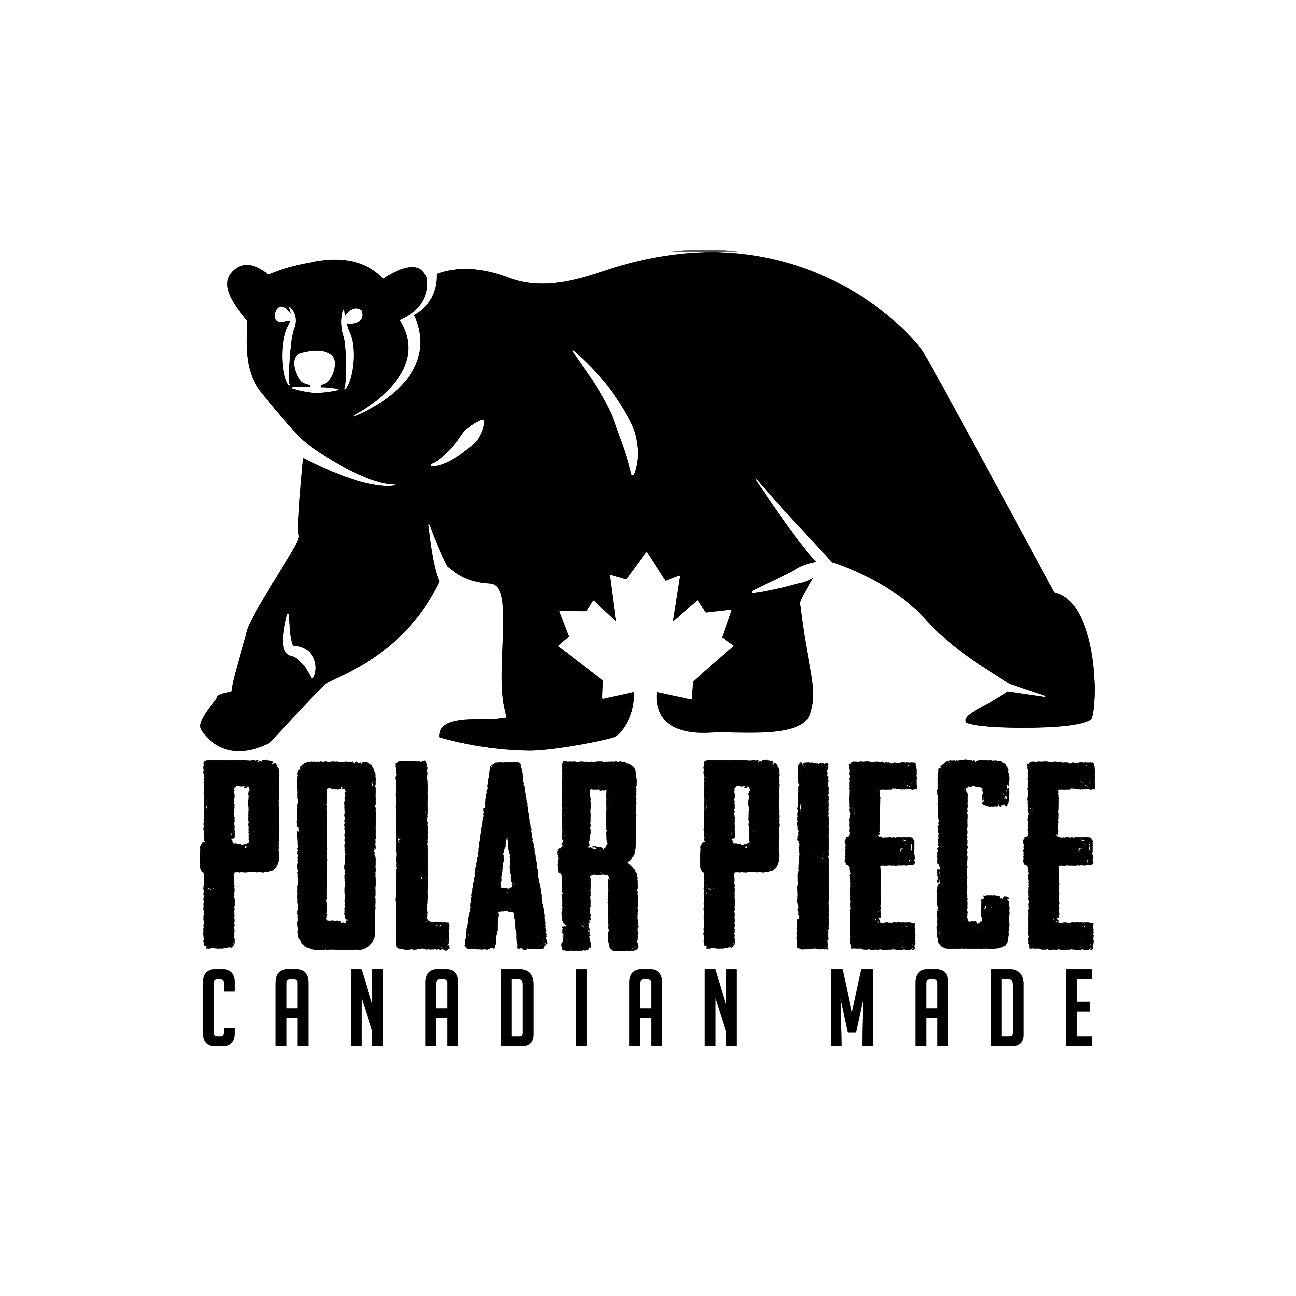 Polar Piece Gift Card